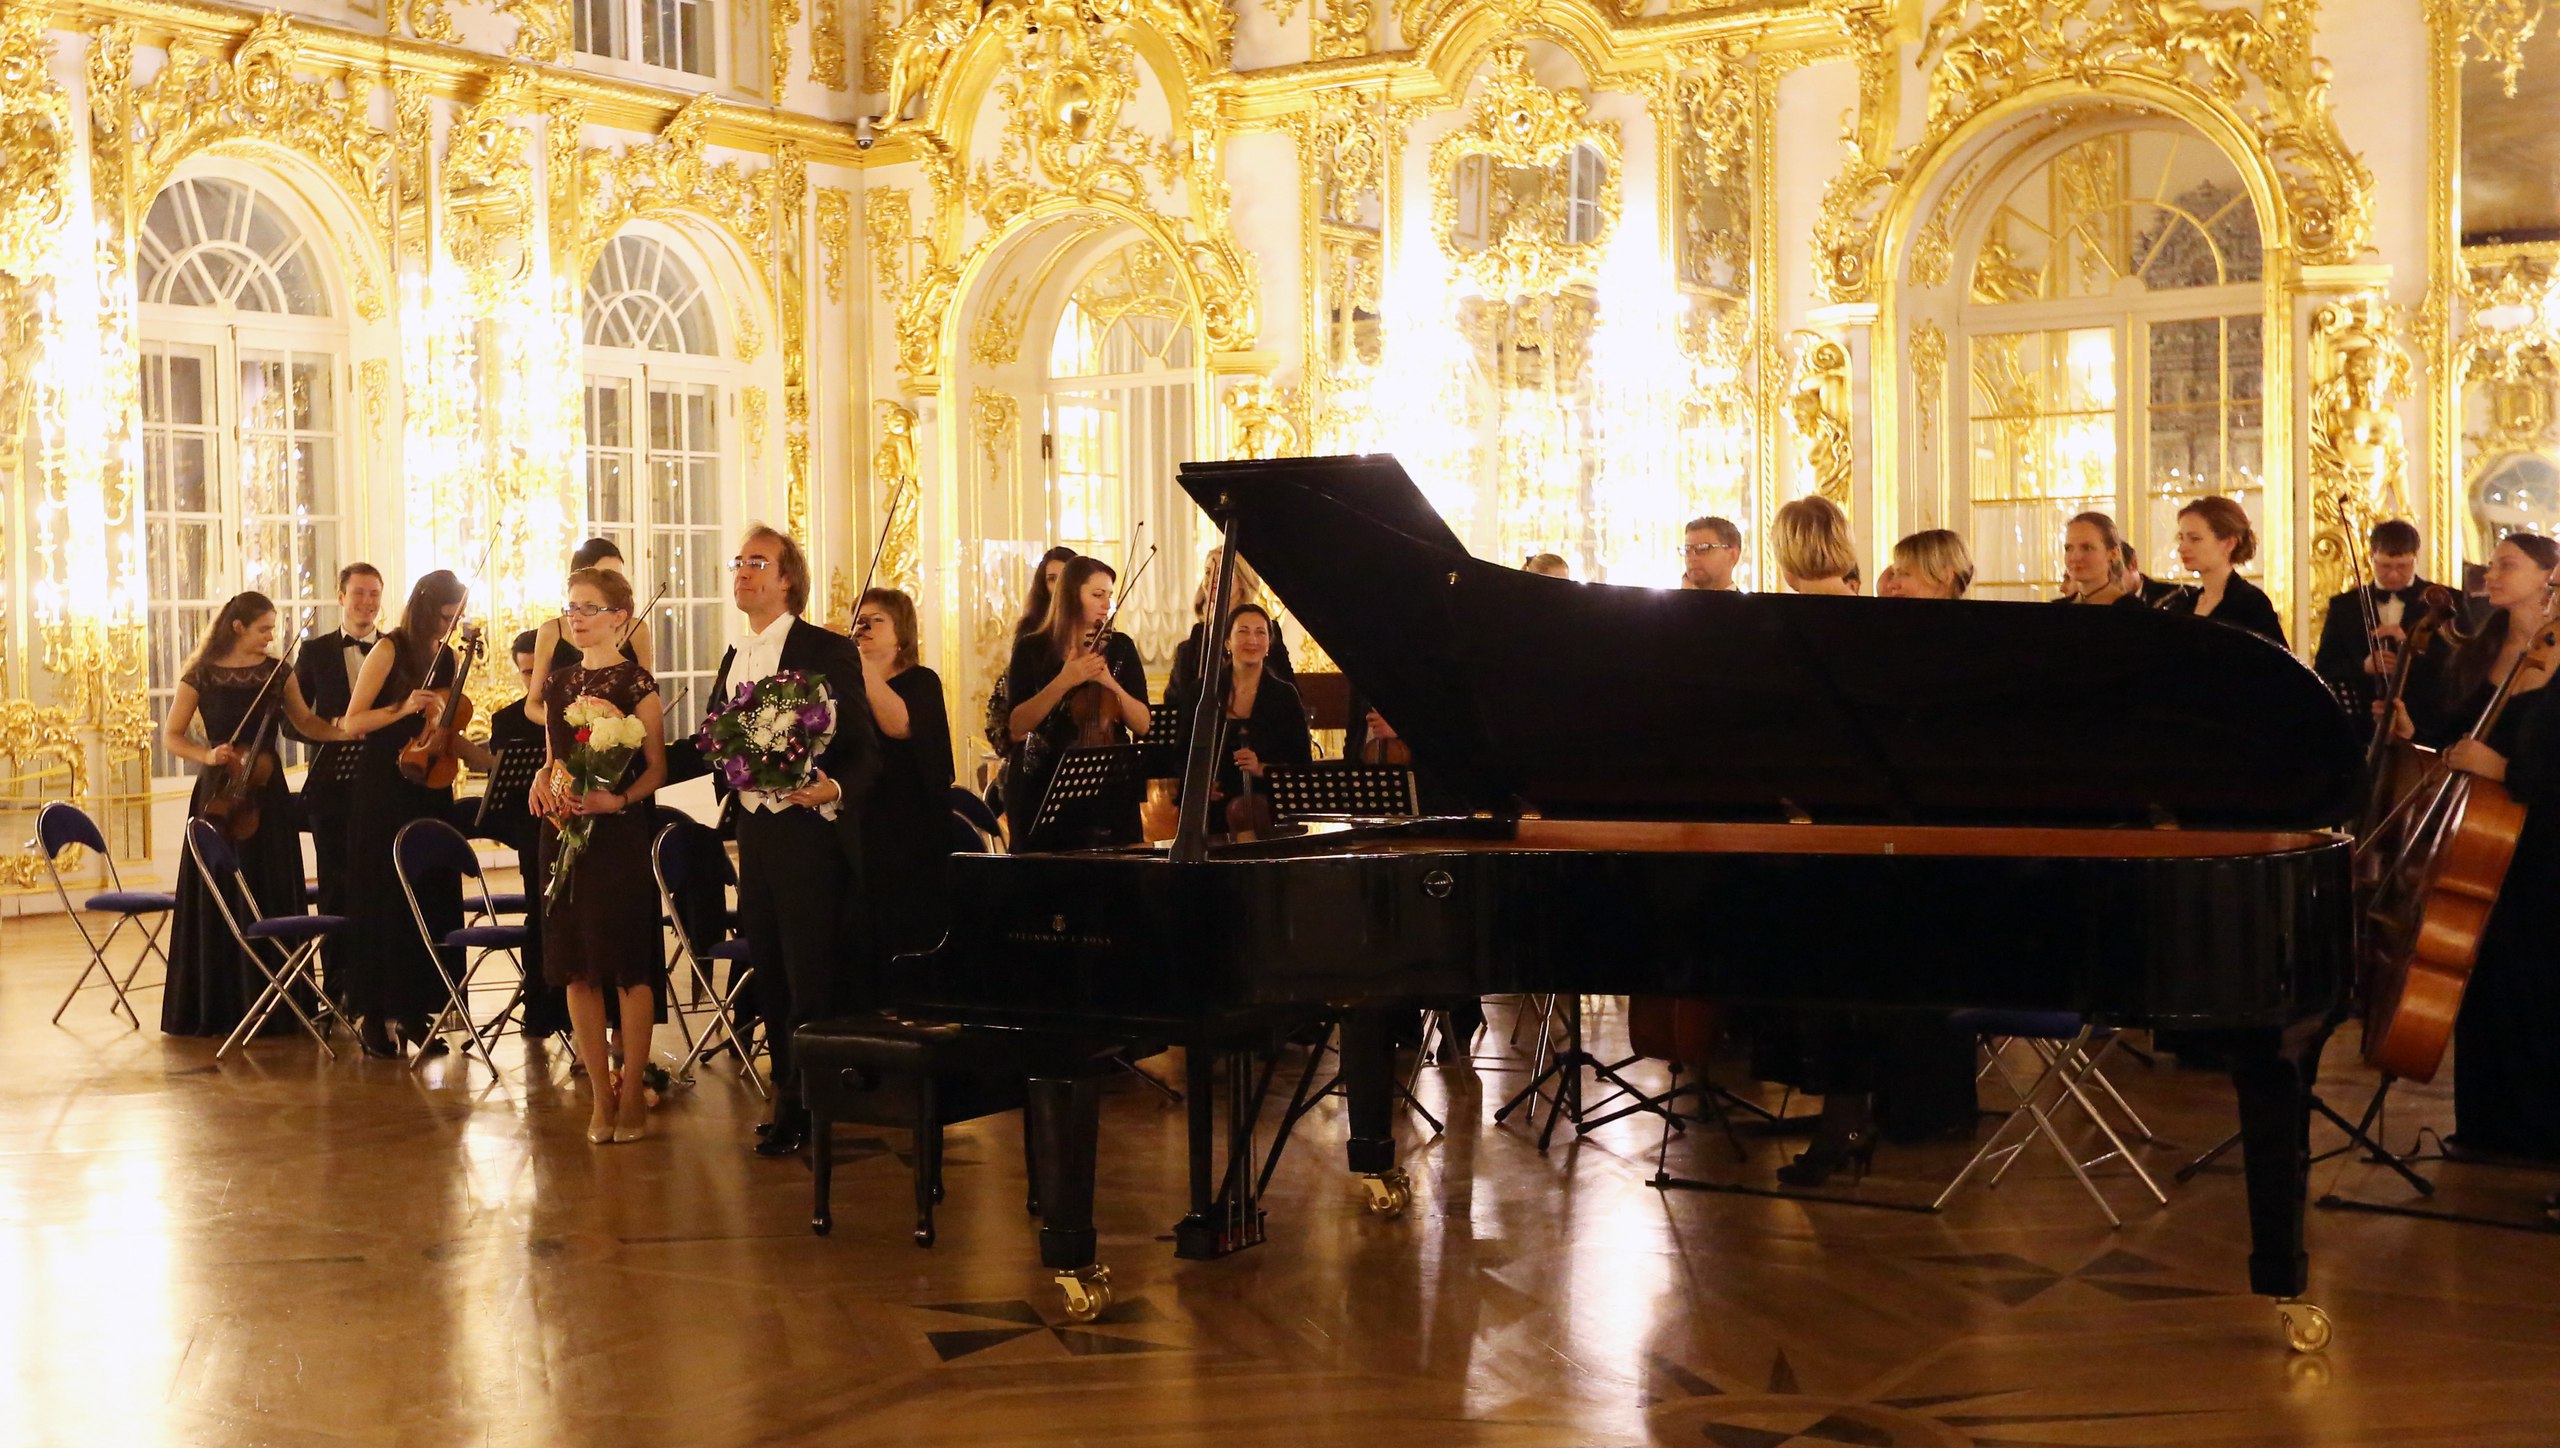 Фотоотчет с концерта оркестра в Екатерининском дворце